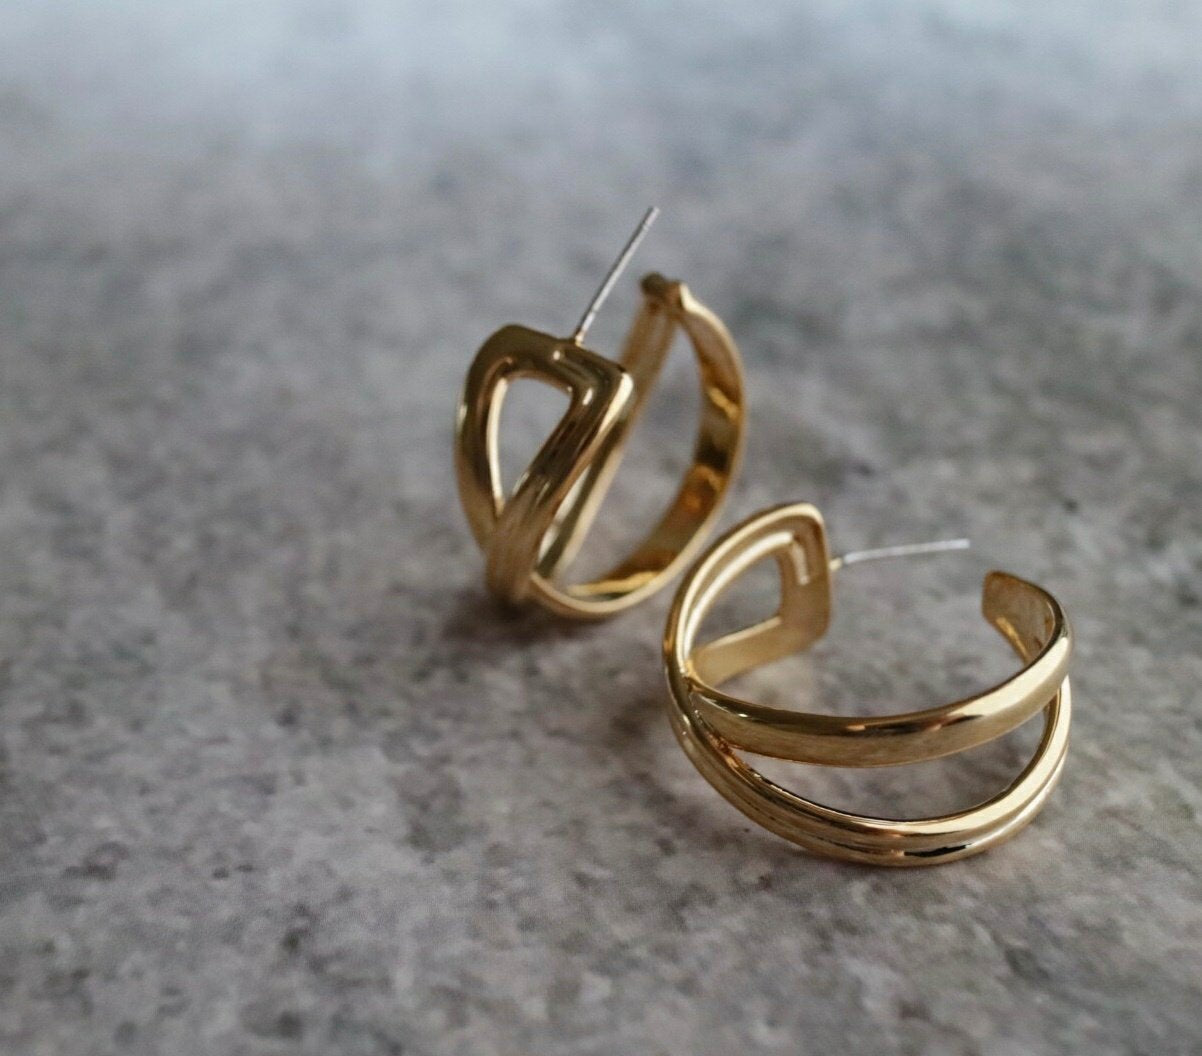 Lopez Earrings in Gold